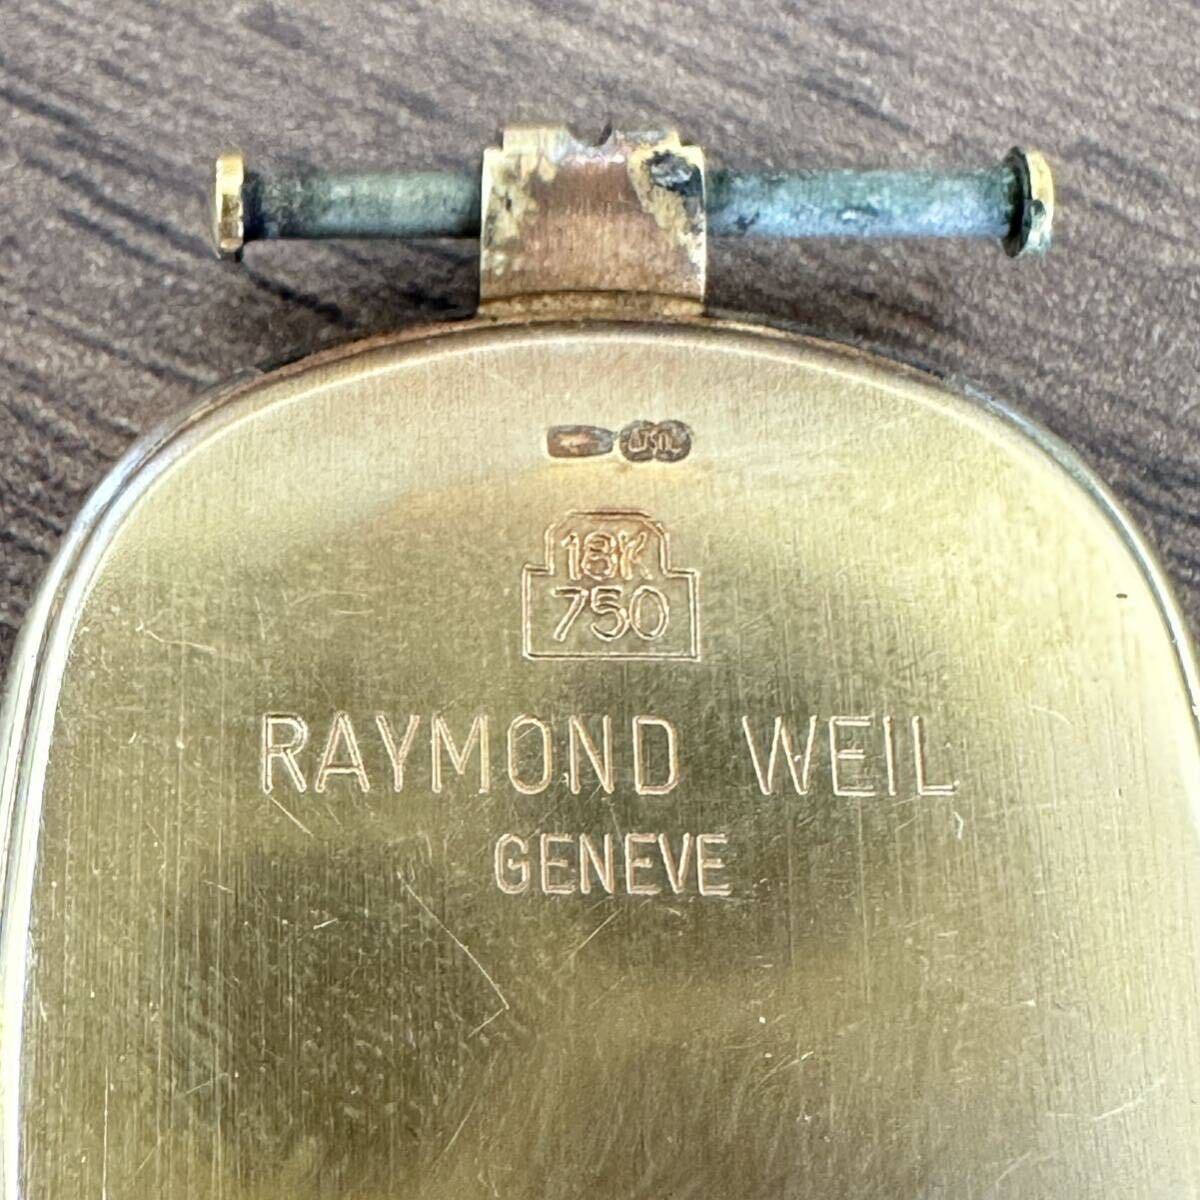 RAYMOND WEILレイモンドウィル/18K 750/ゴールド/ SWISS/ 稼働品/ 腕時計/ジャンク品_画像5